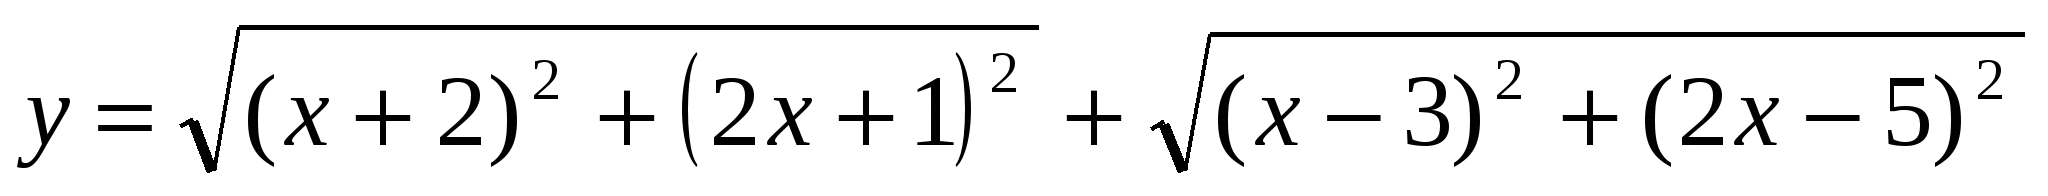 УМК Решение прикладных задач по математике (10-11 классы)